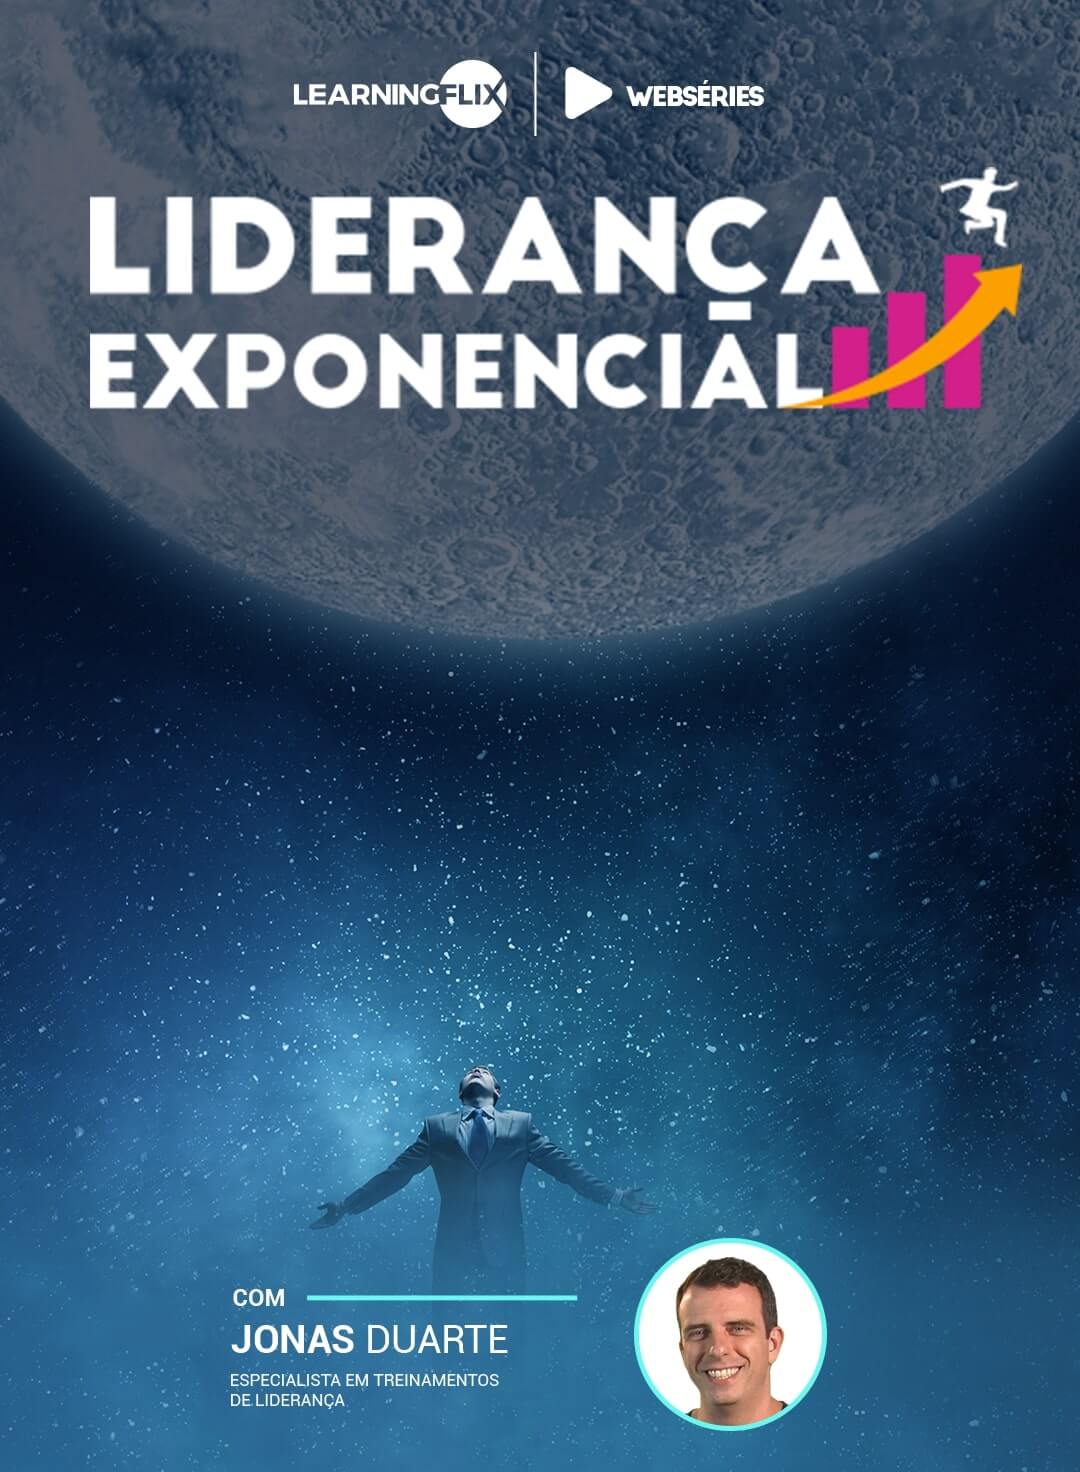 capa da websérie Liderança exponencial com Jonas Duarte